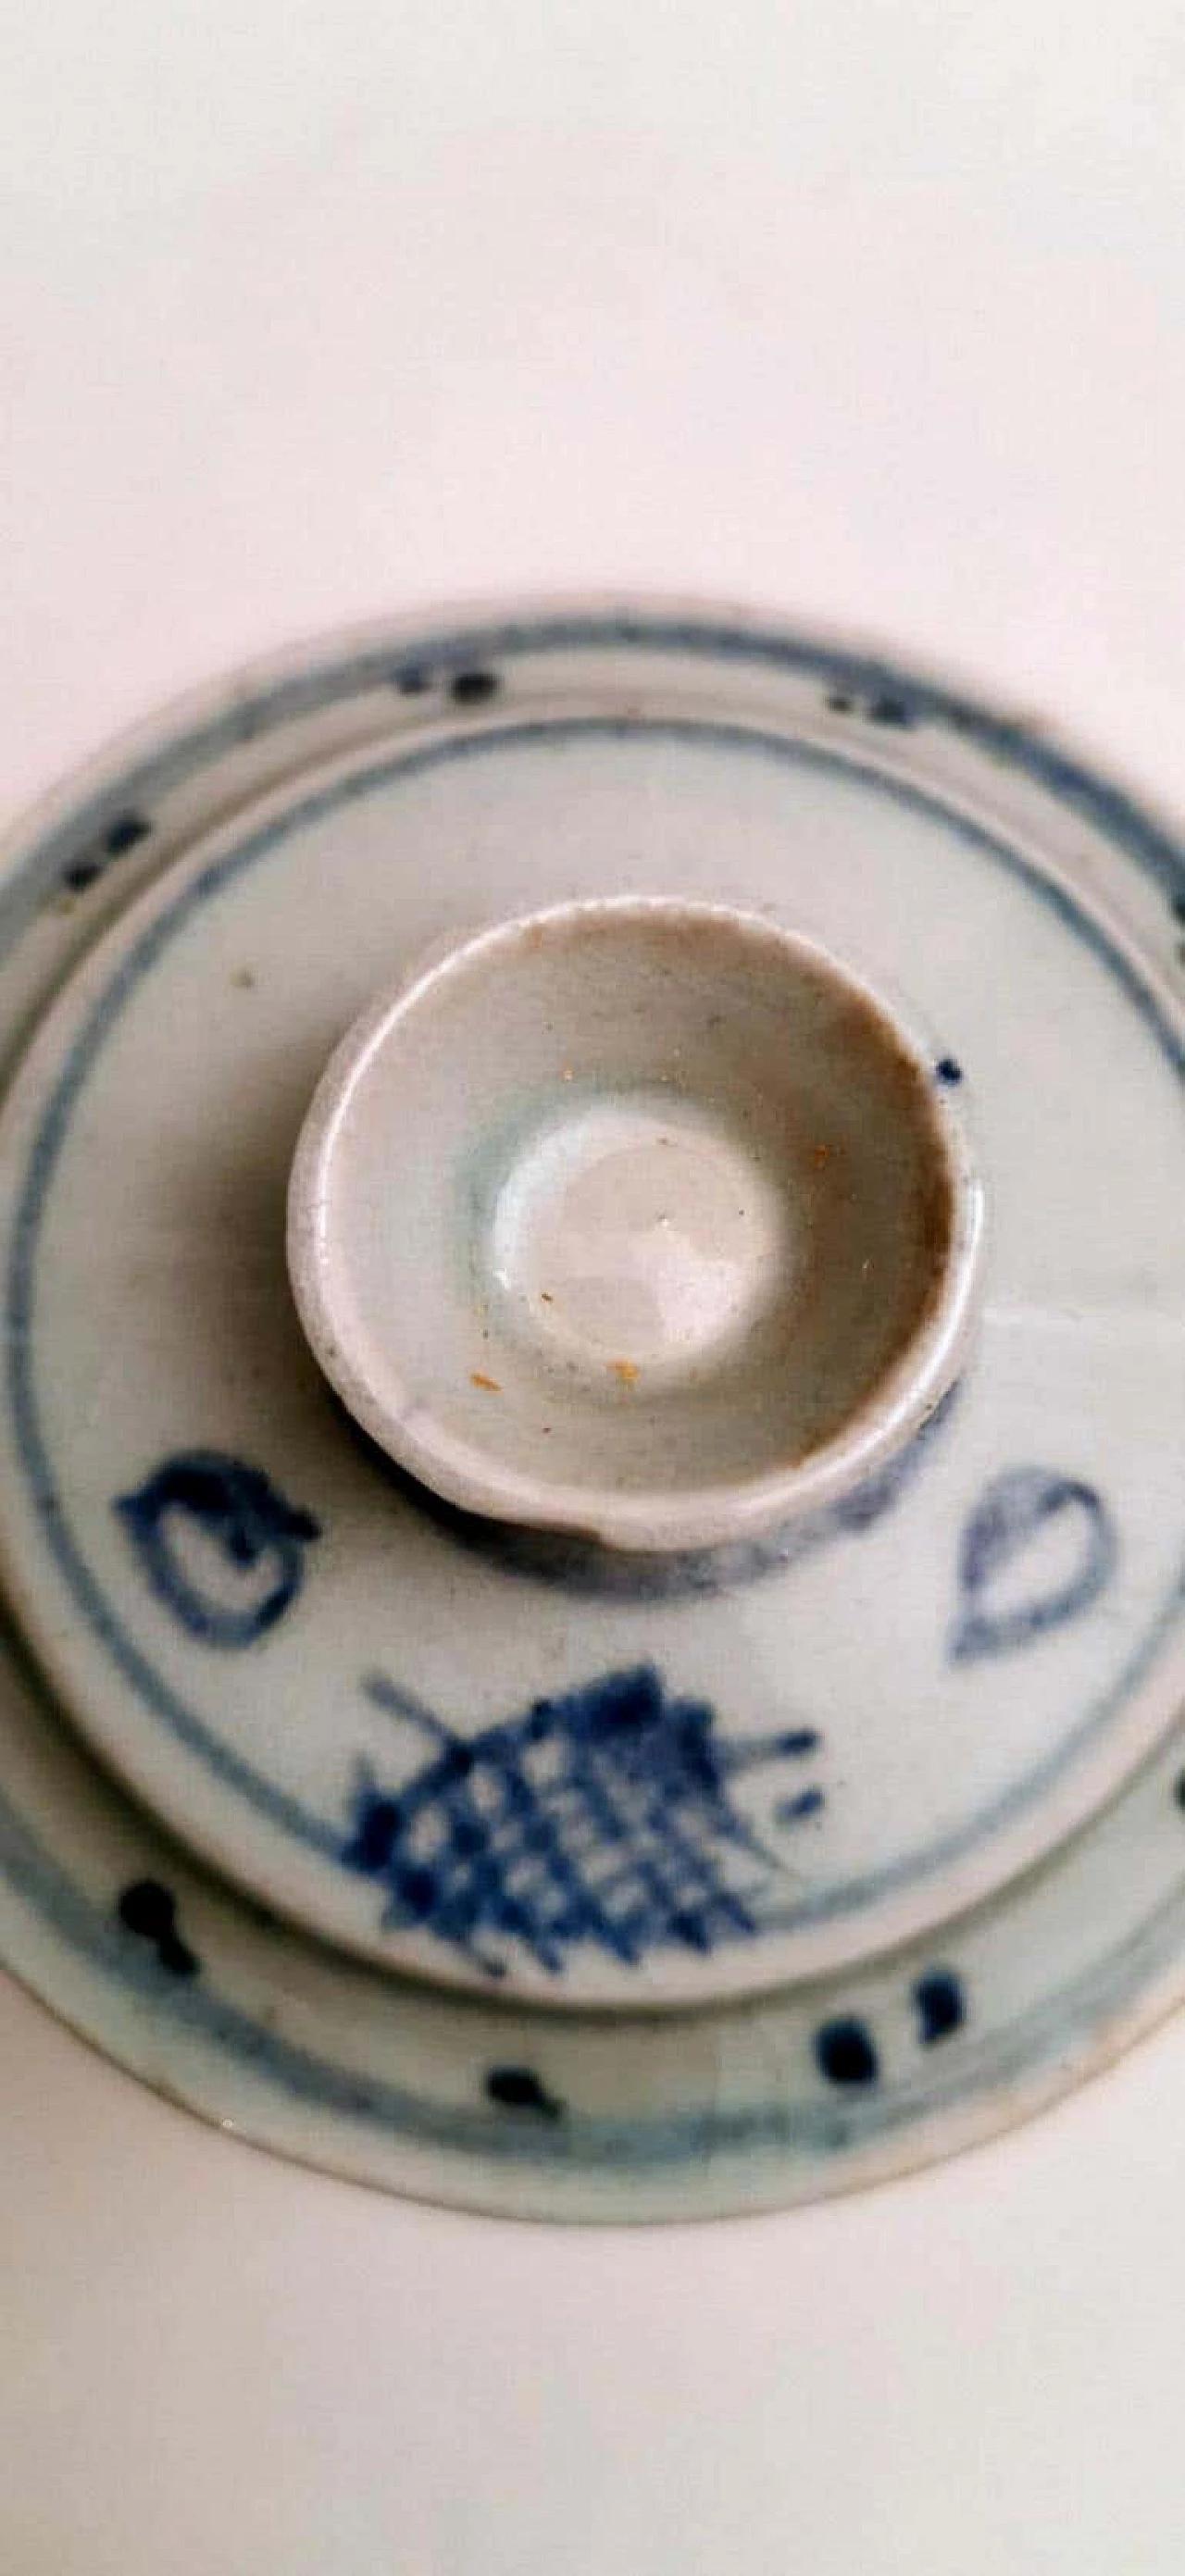 Coppia di vasetti per zenzero in porcellana con decorazioni in blu cobalto 1188338